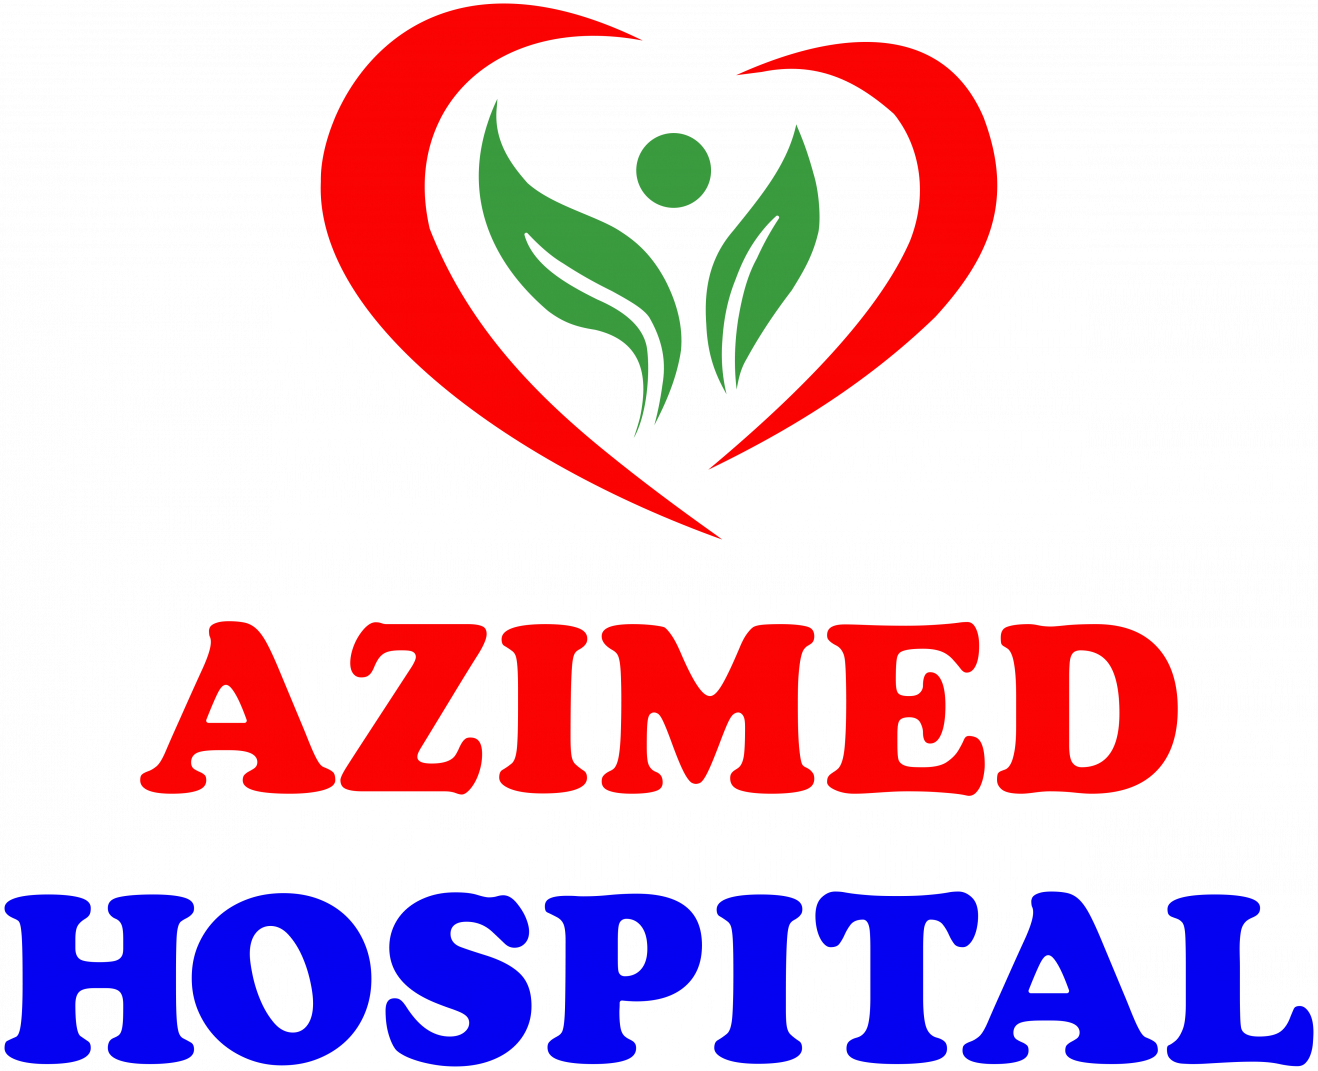 Azimed Hospital хусусий клиникасини танлаган беморлар ФИКРИ!